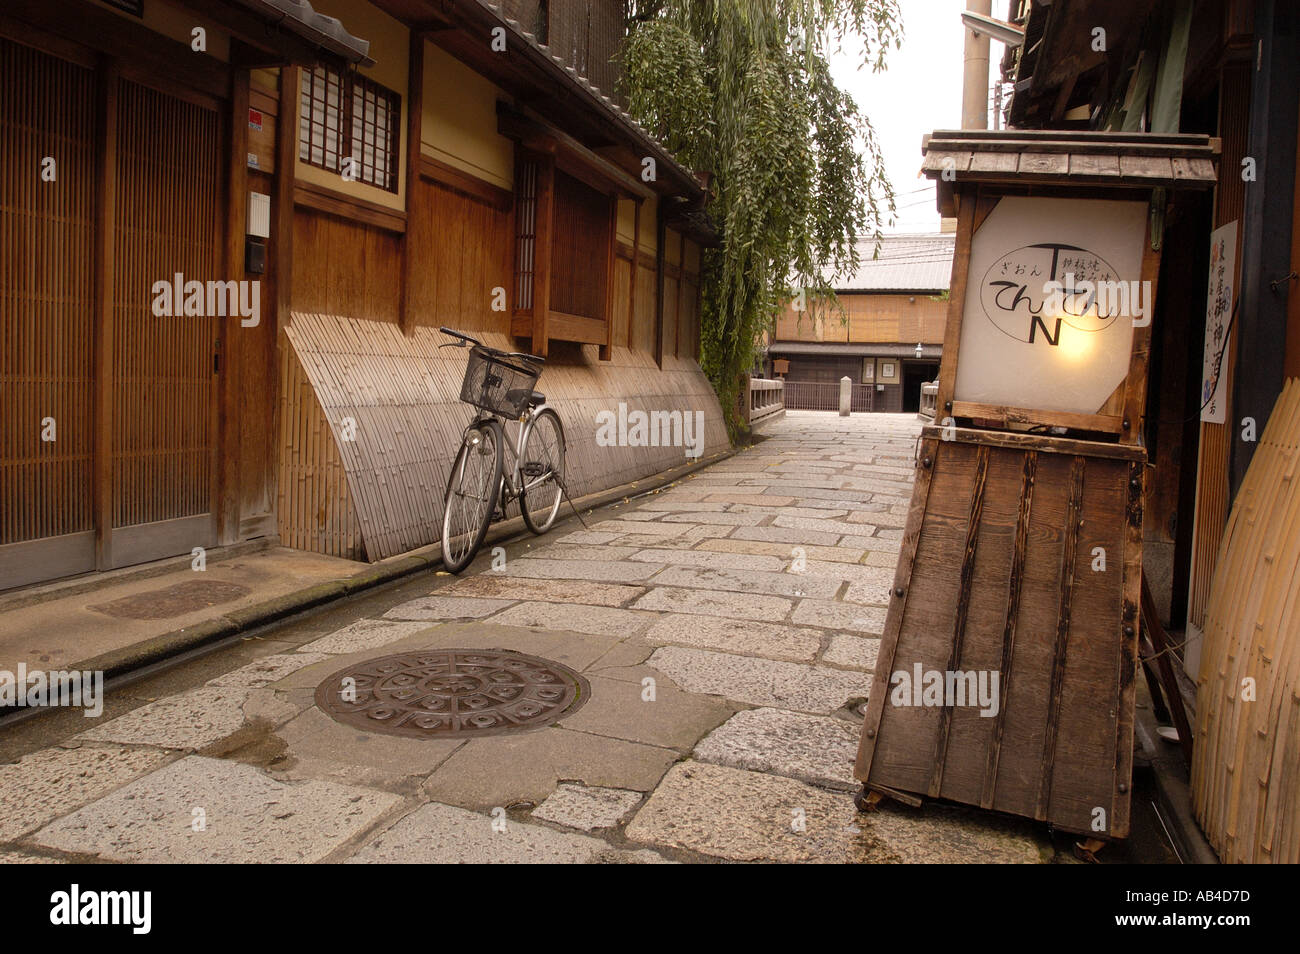 Una zona tranquila con restaurantes y casas de té tradicionales de madera en Japón Kyoto Gion Foto de stock